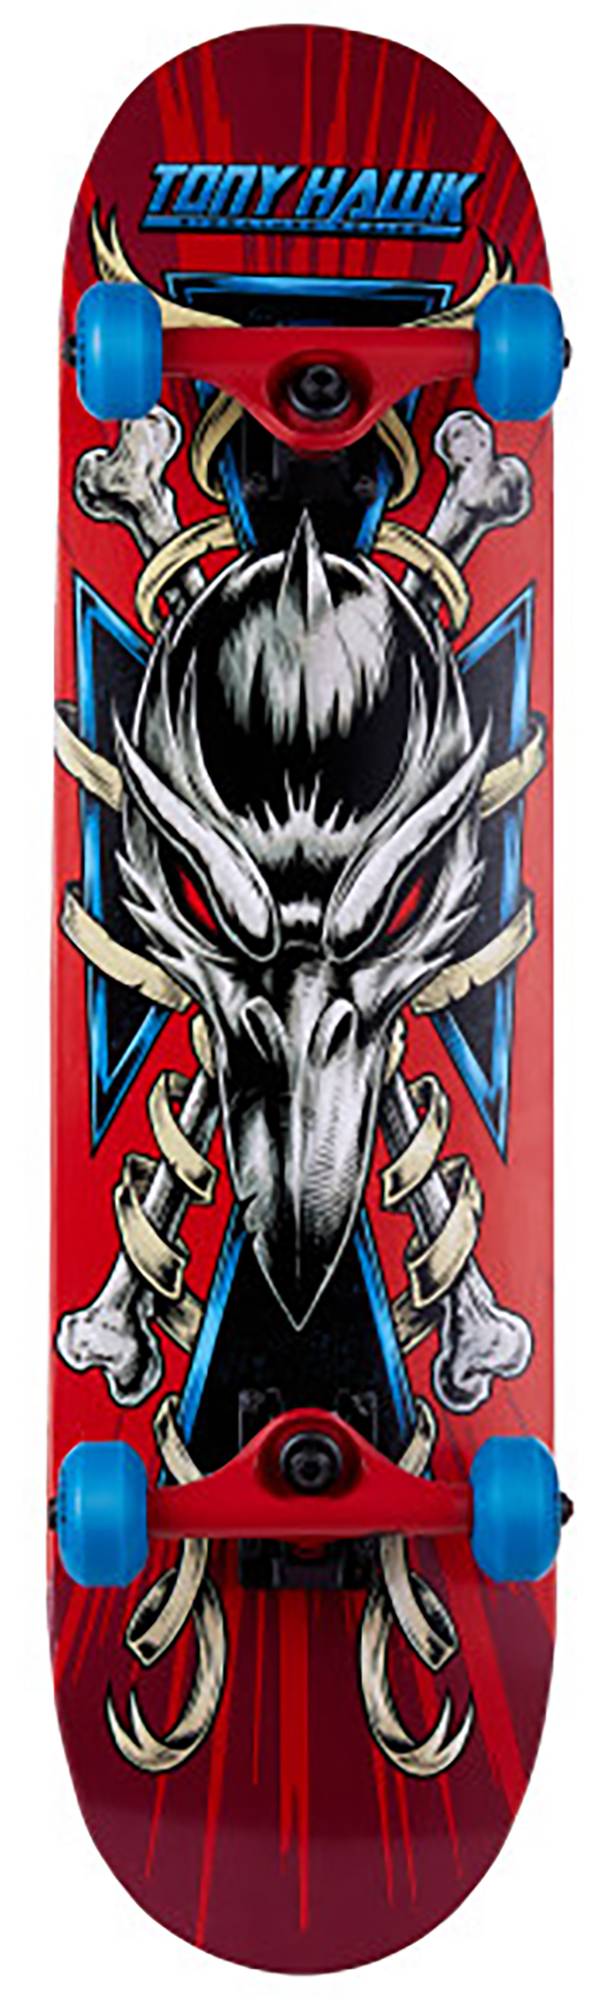 Sakar 31" Series 4 Skateboard product image